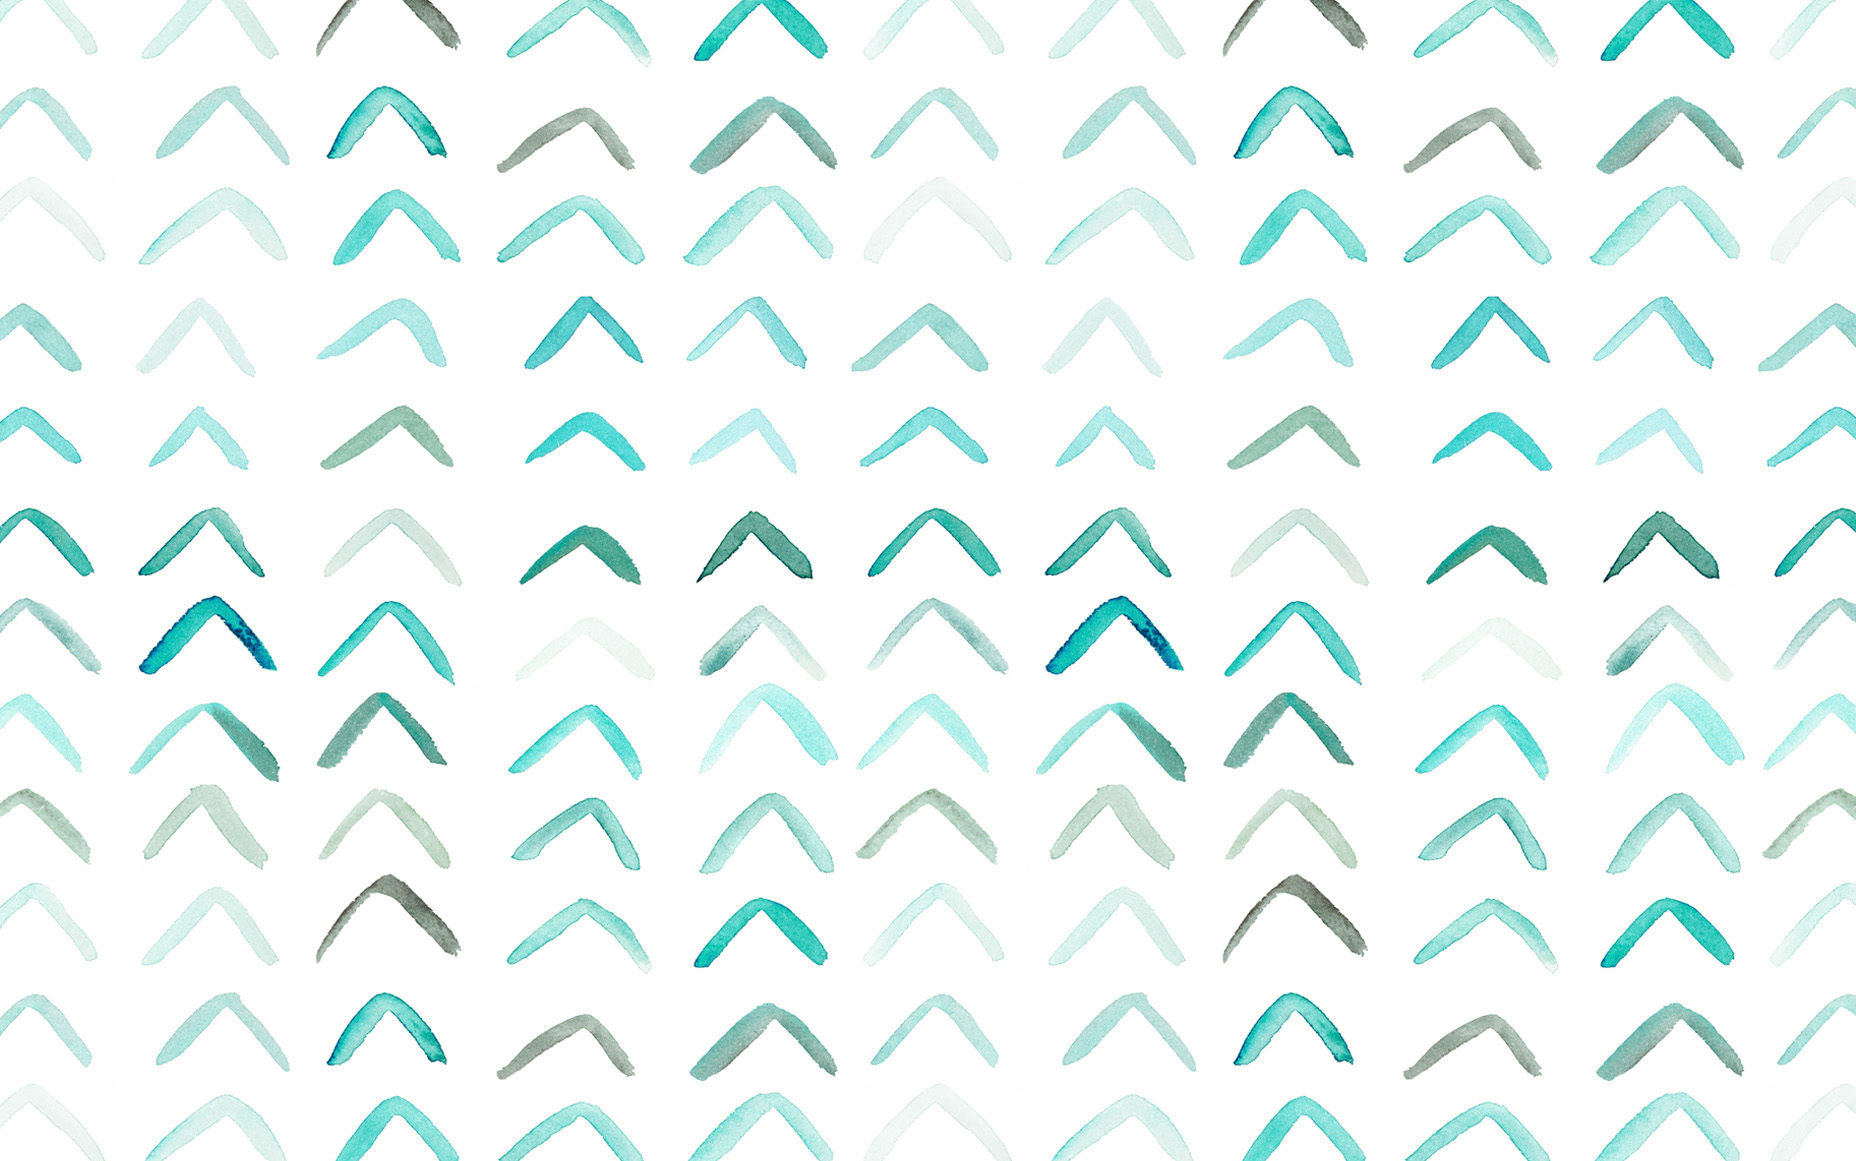 DesignLoveFest Desktop Wallpapers by Jess Bruggink on Dribbble